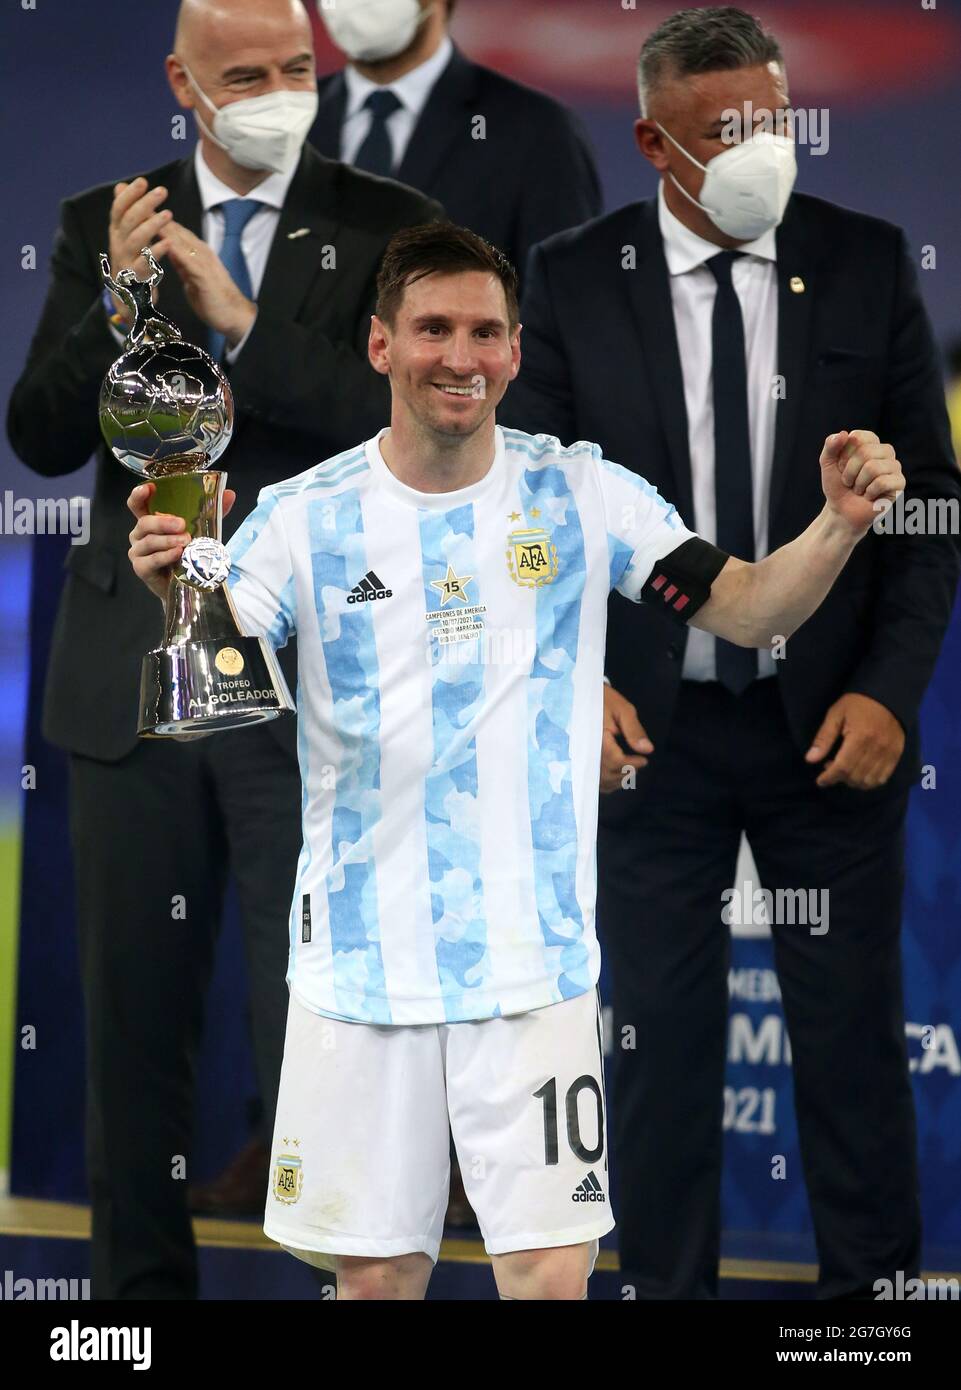 Lionel Messi: “Trái bóng luôn níu chân Messi, nhưng chính anh chủ động điều khiển trận đấu. Xem hình ảnh liên quan để cảm nhận được tài năng thiên bẩm của ngôi sao bóng đá này.”